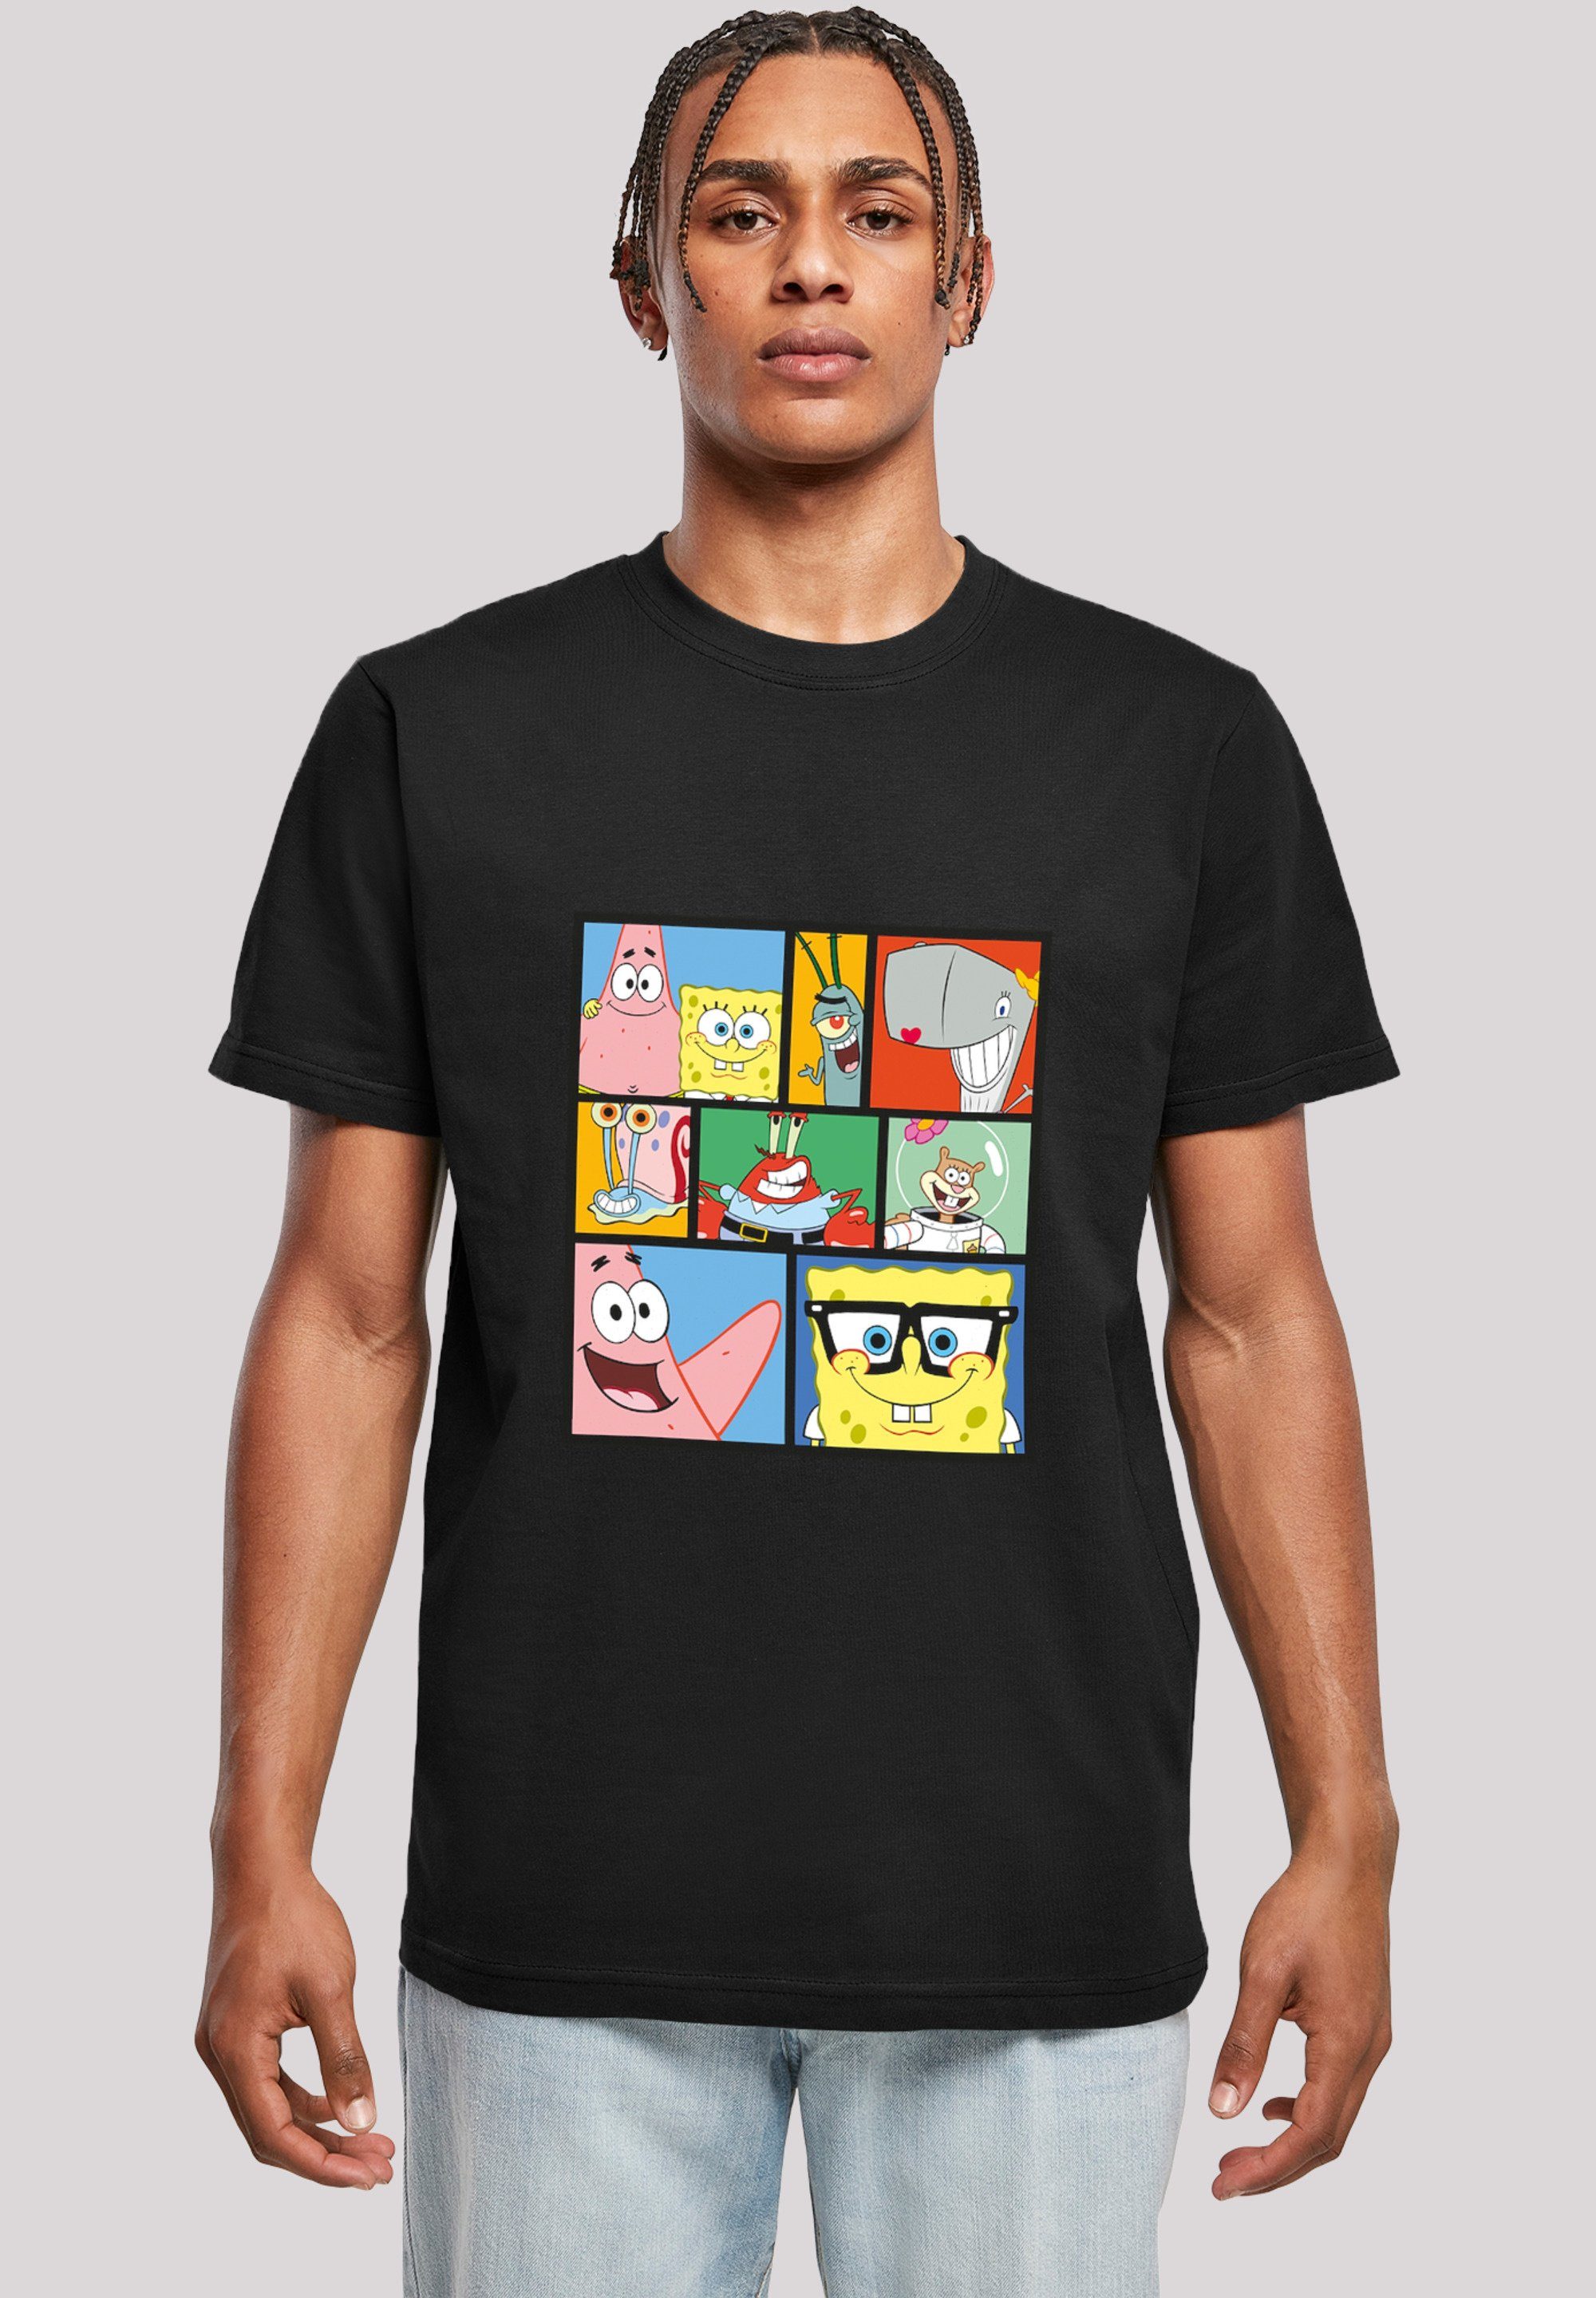 F4NT4STIC T-Shirt schwarz Collage Herren,Premium Spongebob Schwammkopf Merch,Regular-Fit,Basic,Bedruckt